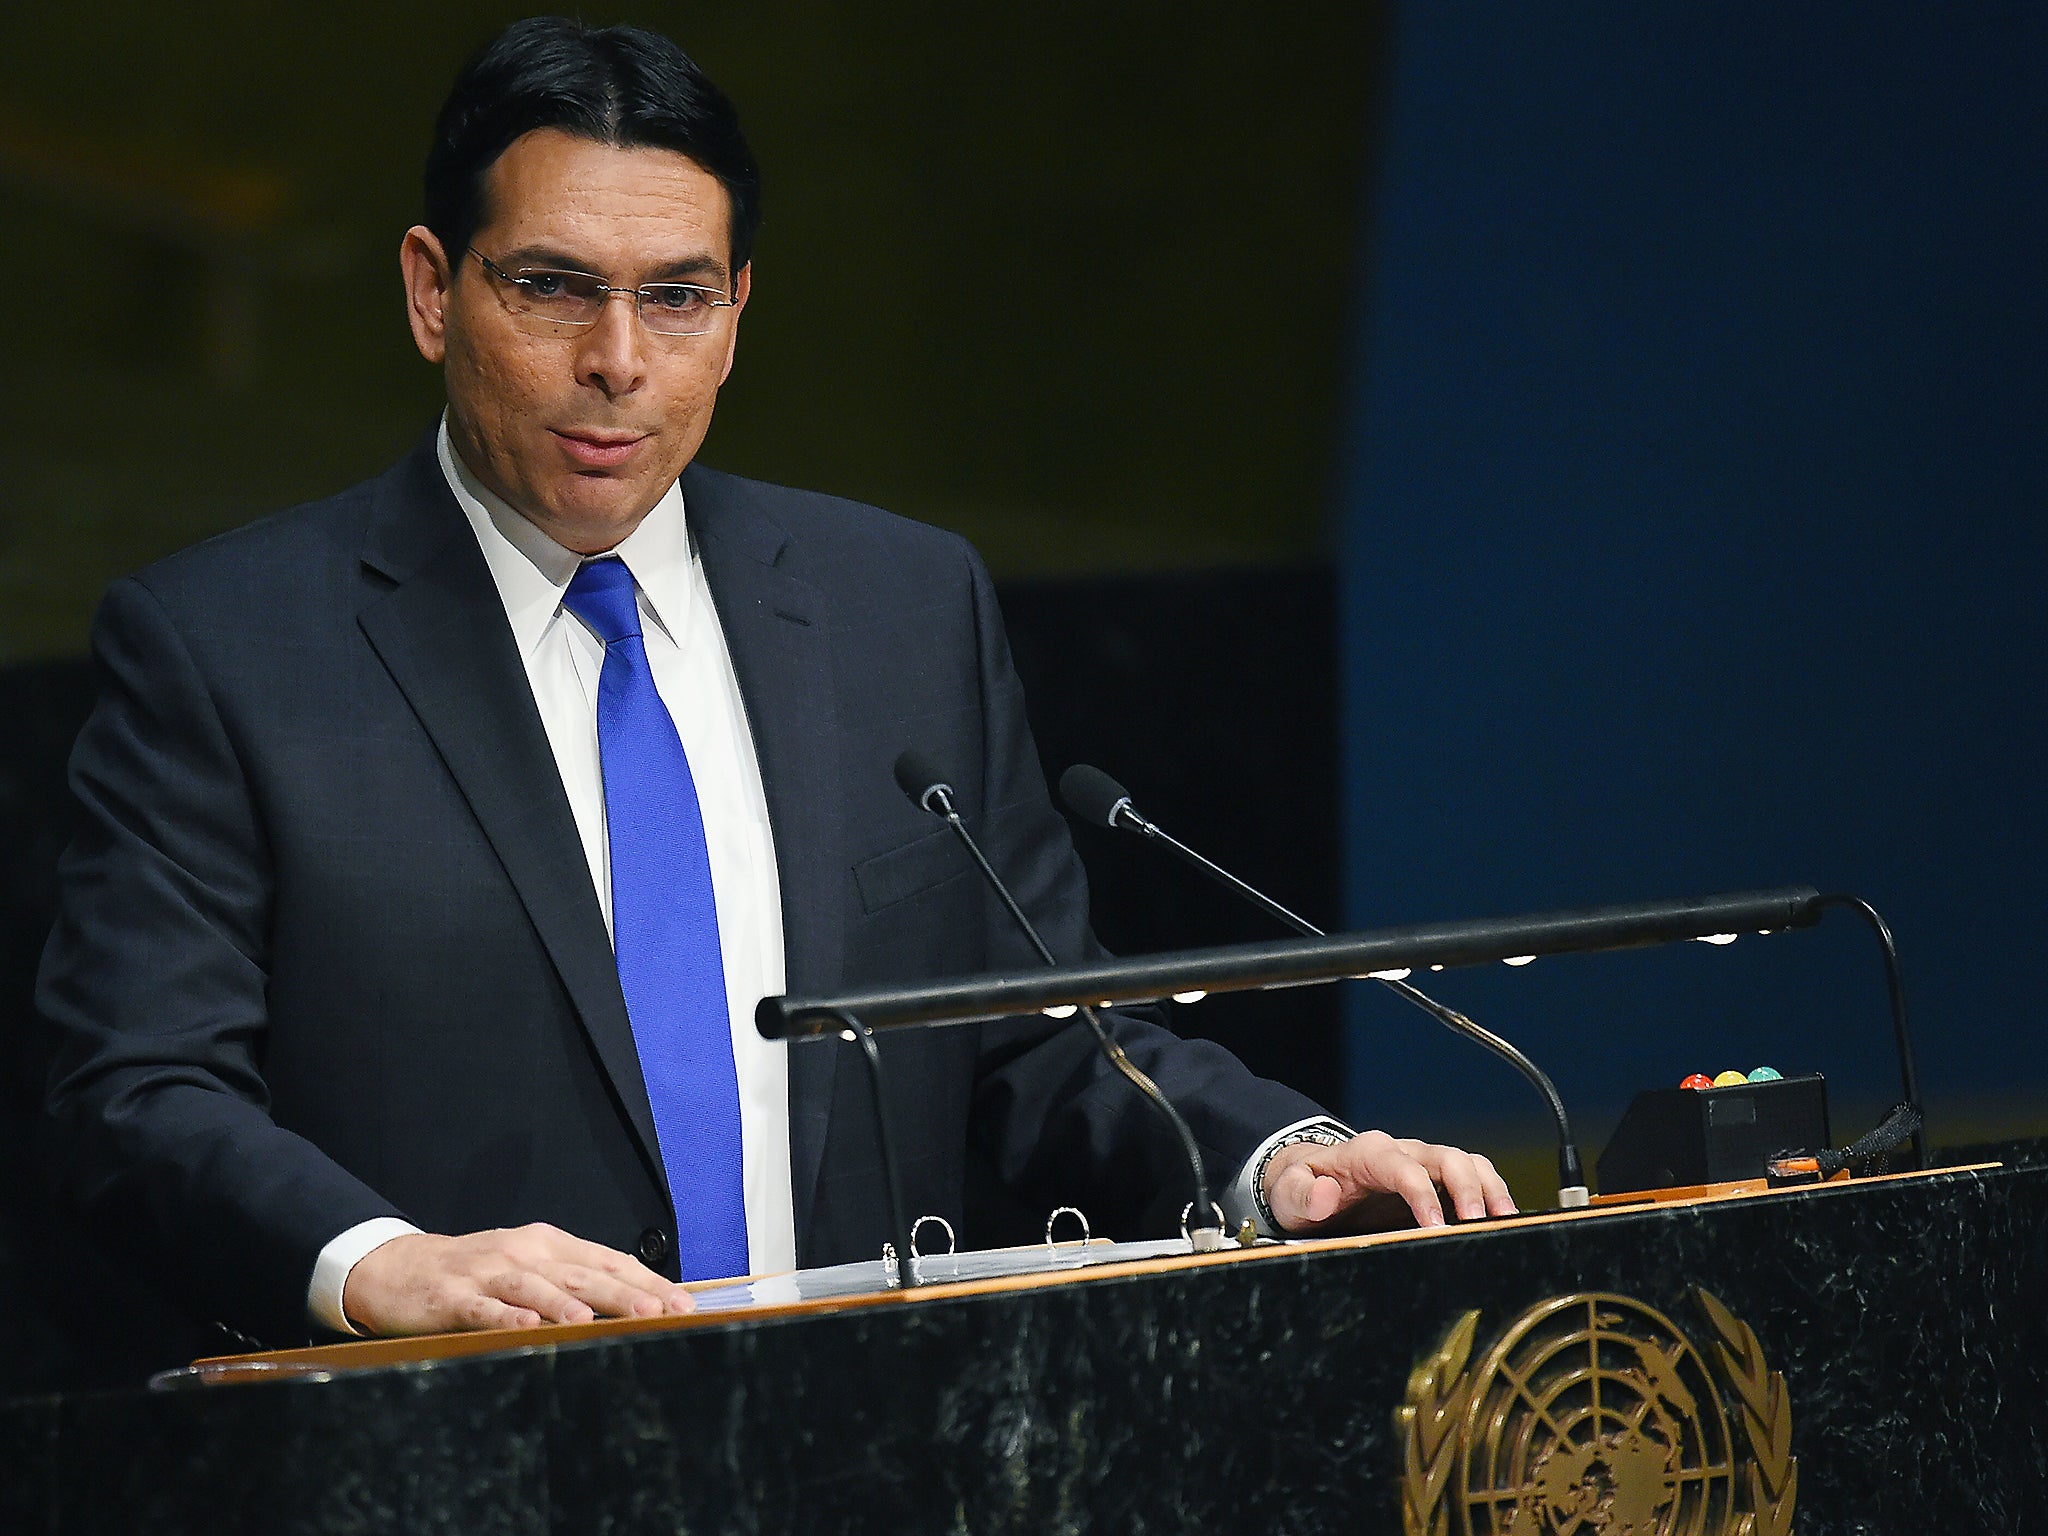 Israel's permanent representative to the United Nations, Danny Danon